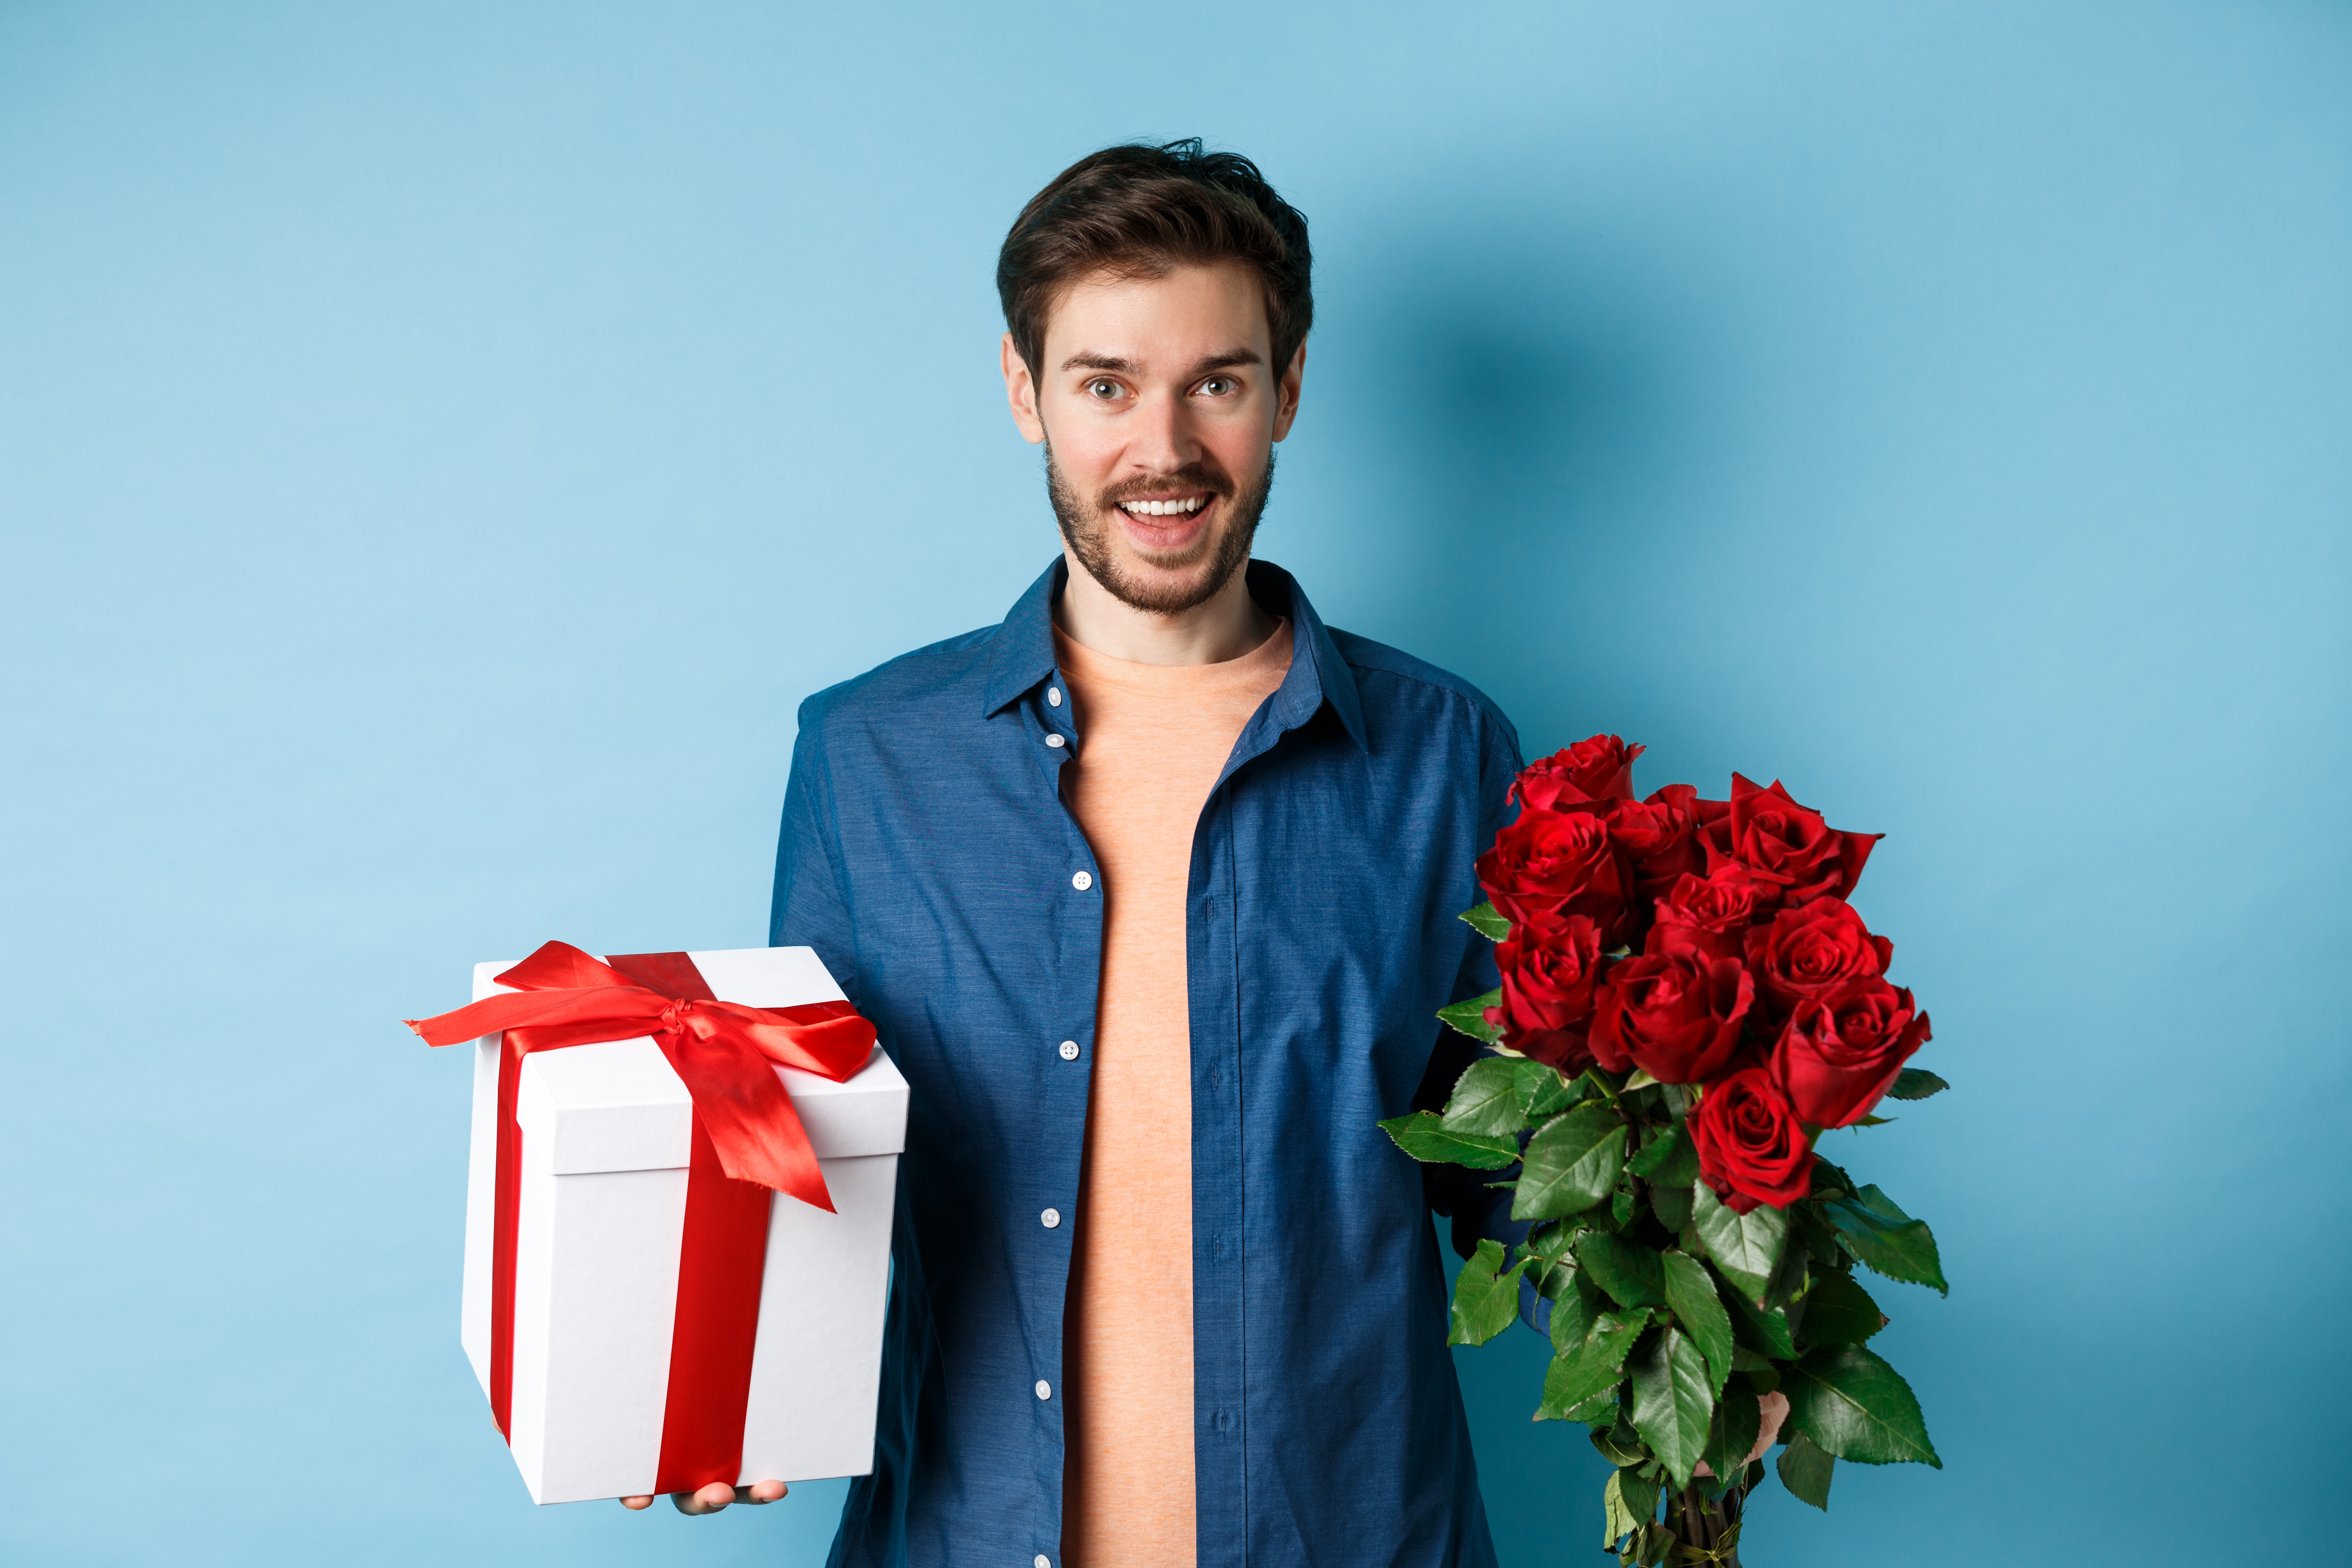 Homme tenant un bouquet de roses et un paquet cadeau | Source : Shutterstock